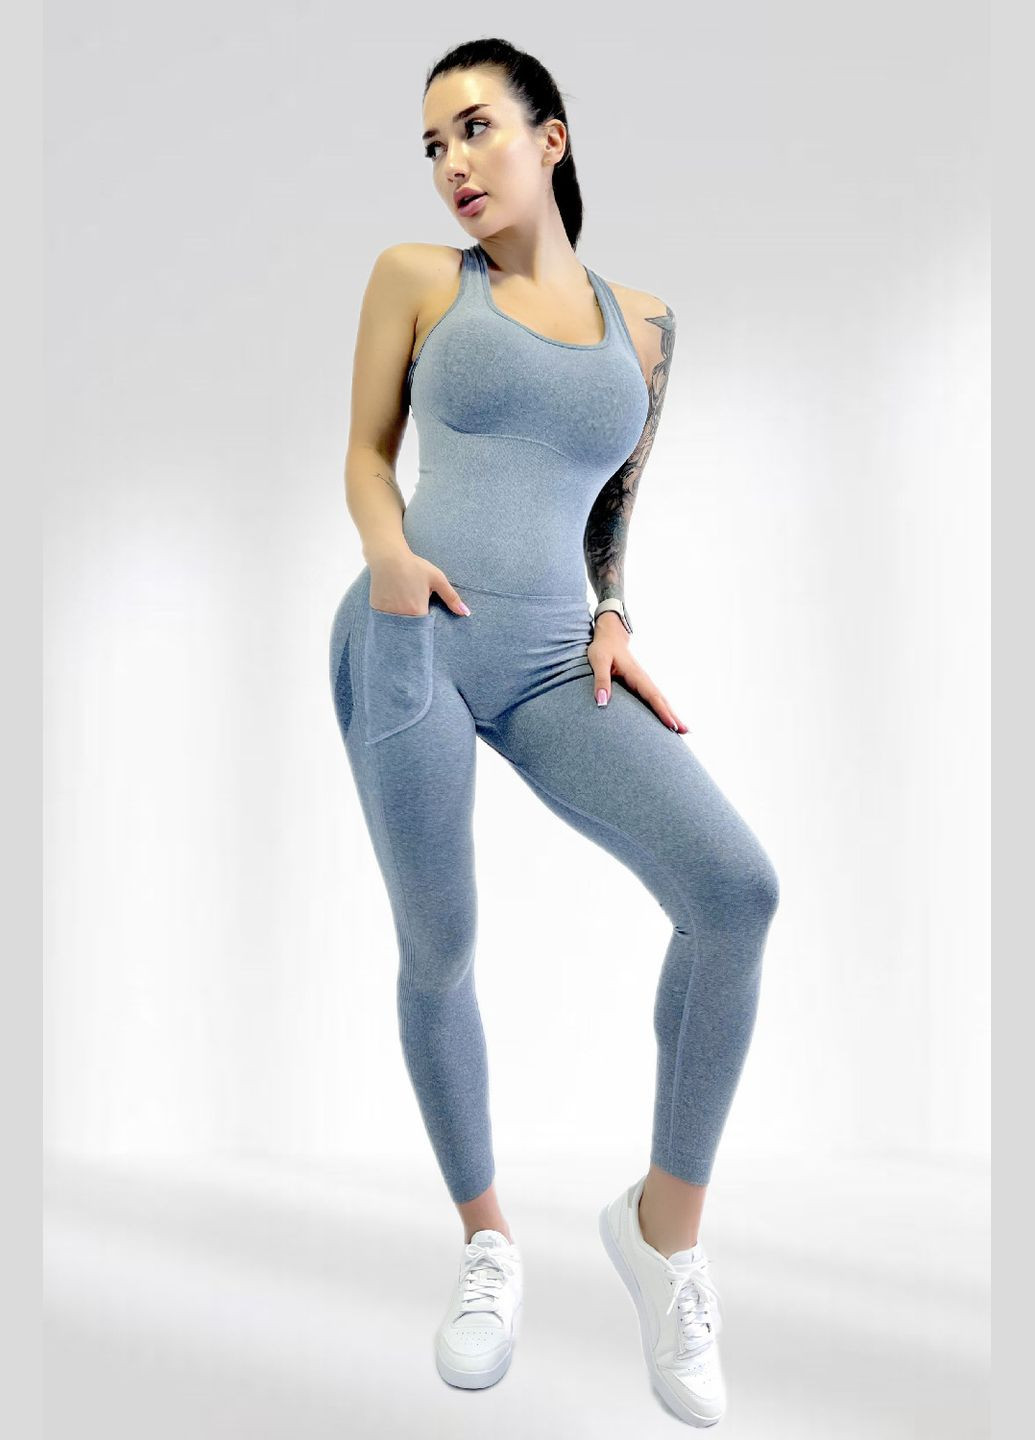 Спортивний жіночий комбінезон для гімнастики йоги фітнесу LILAFIT комбінезон-брюки сірий спортивний нейлон